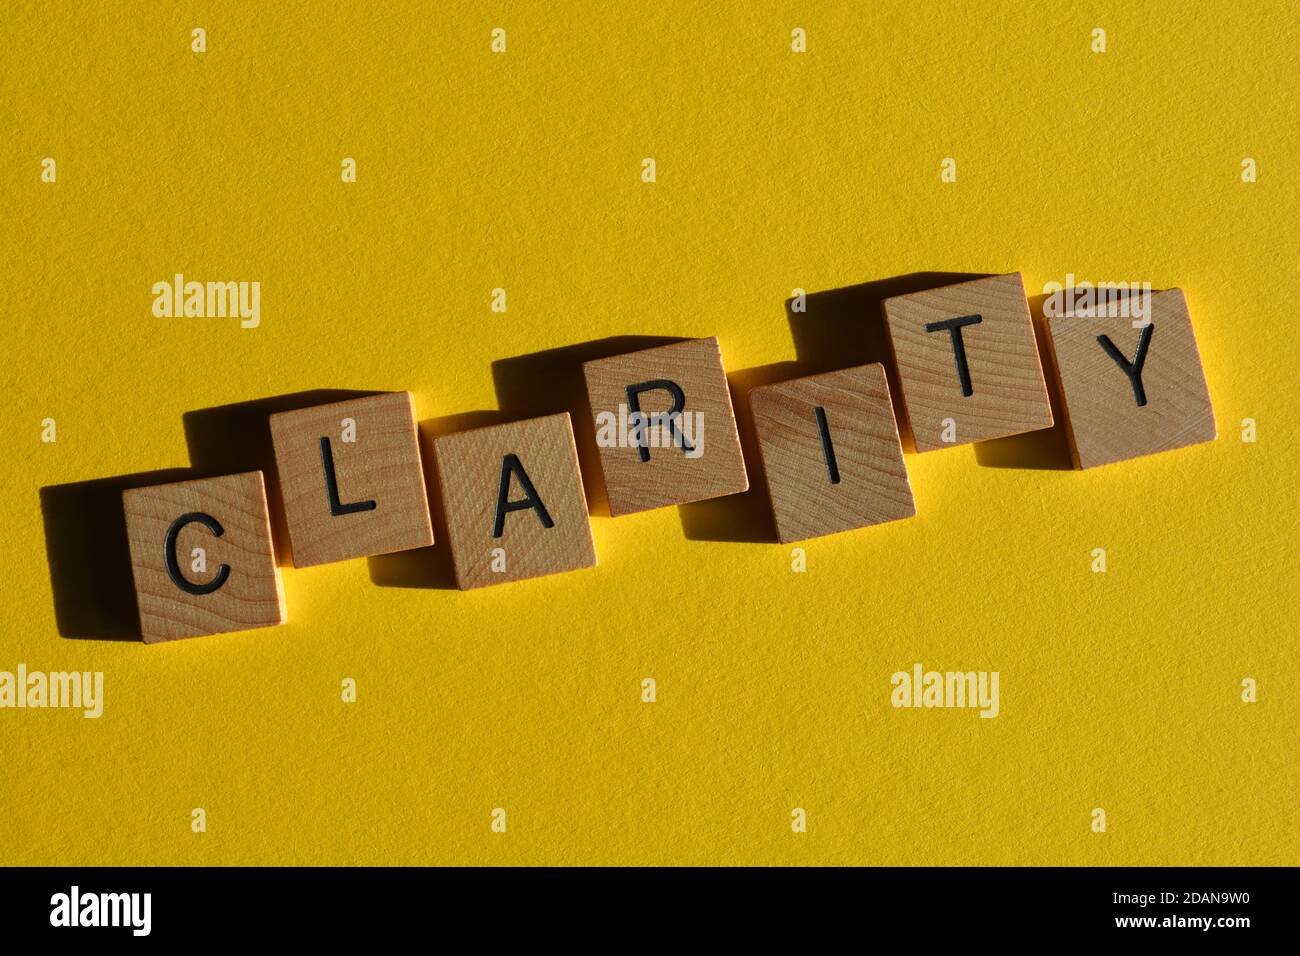 Klarheit, Wort in Holz Alphabet Buchstaben isoliert auf hellgelben Hintergrund Stockfoto